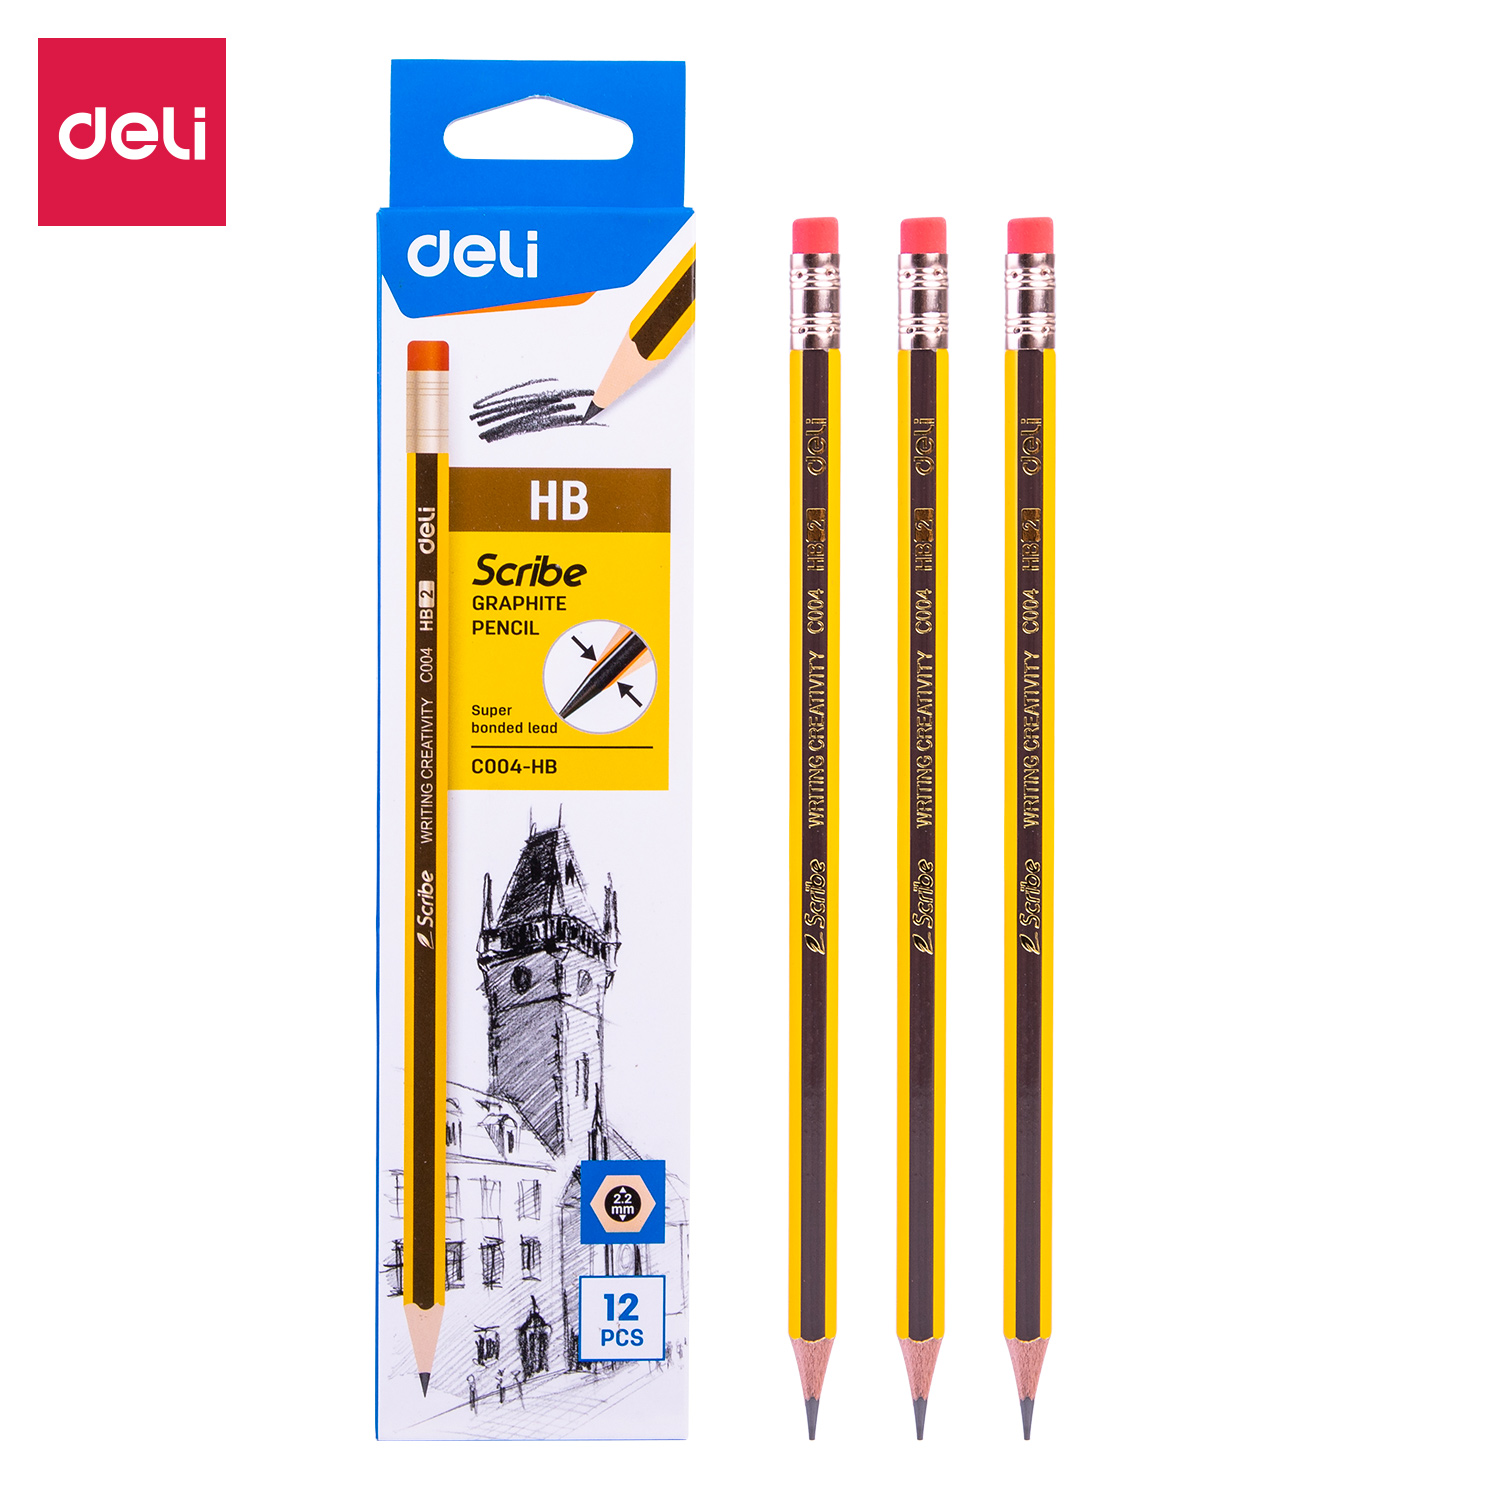 Deli-EC004-HB Graphite Pencil